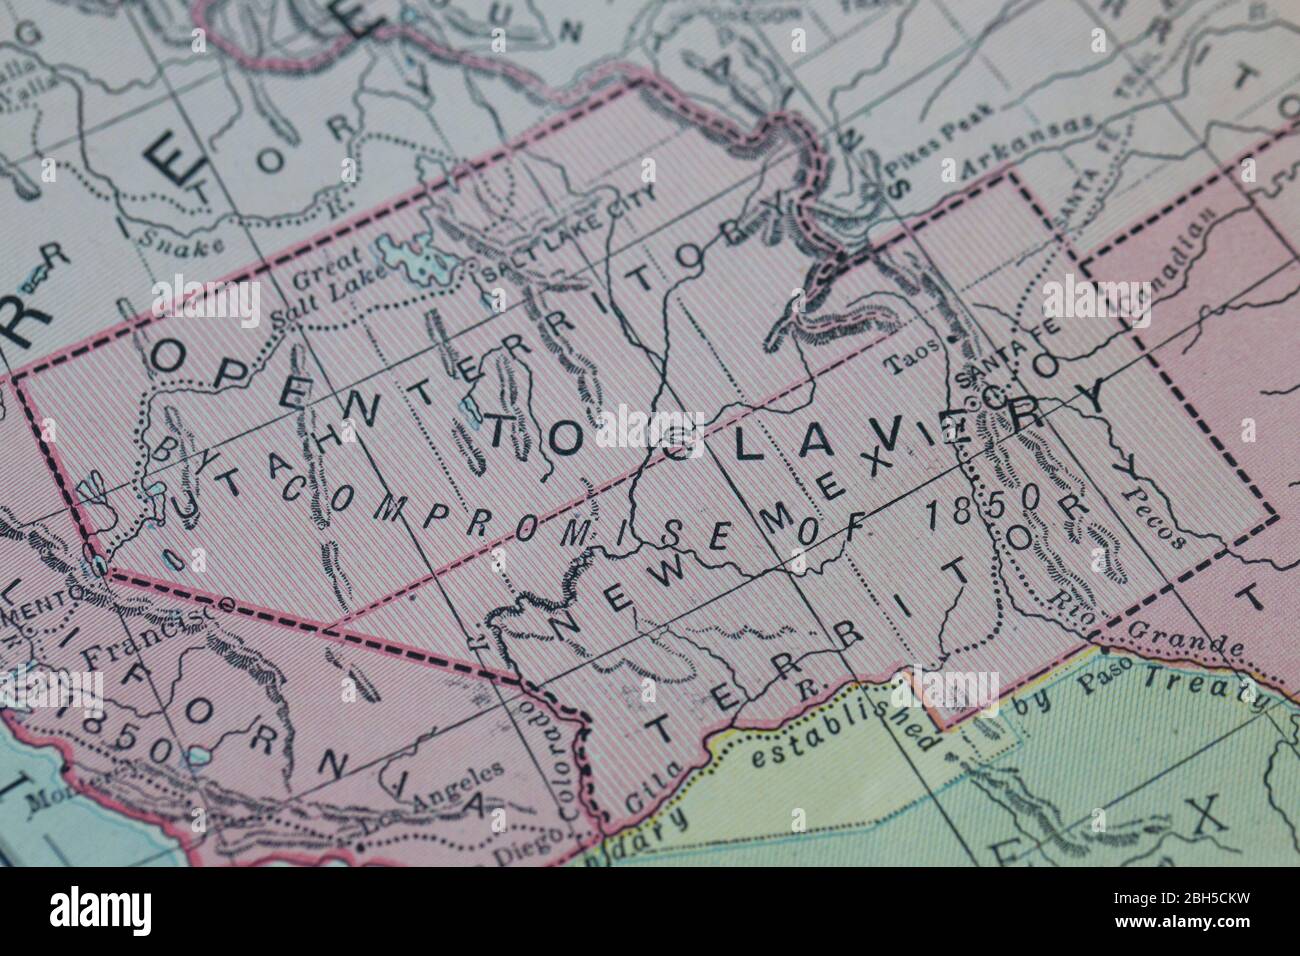 Gros plan d'une ancienne carte des États-Unis montrant une zone ouverte à l'esclavage. Banque D'Images